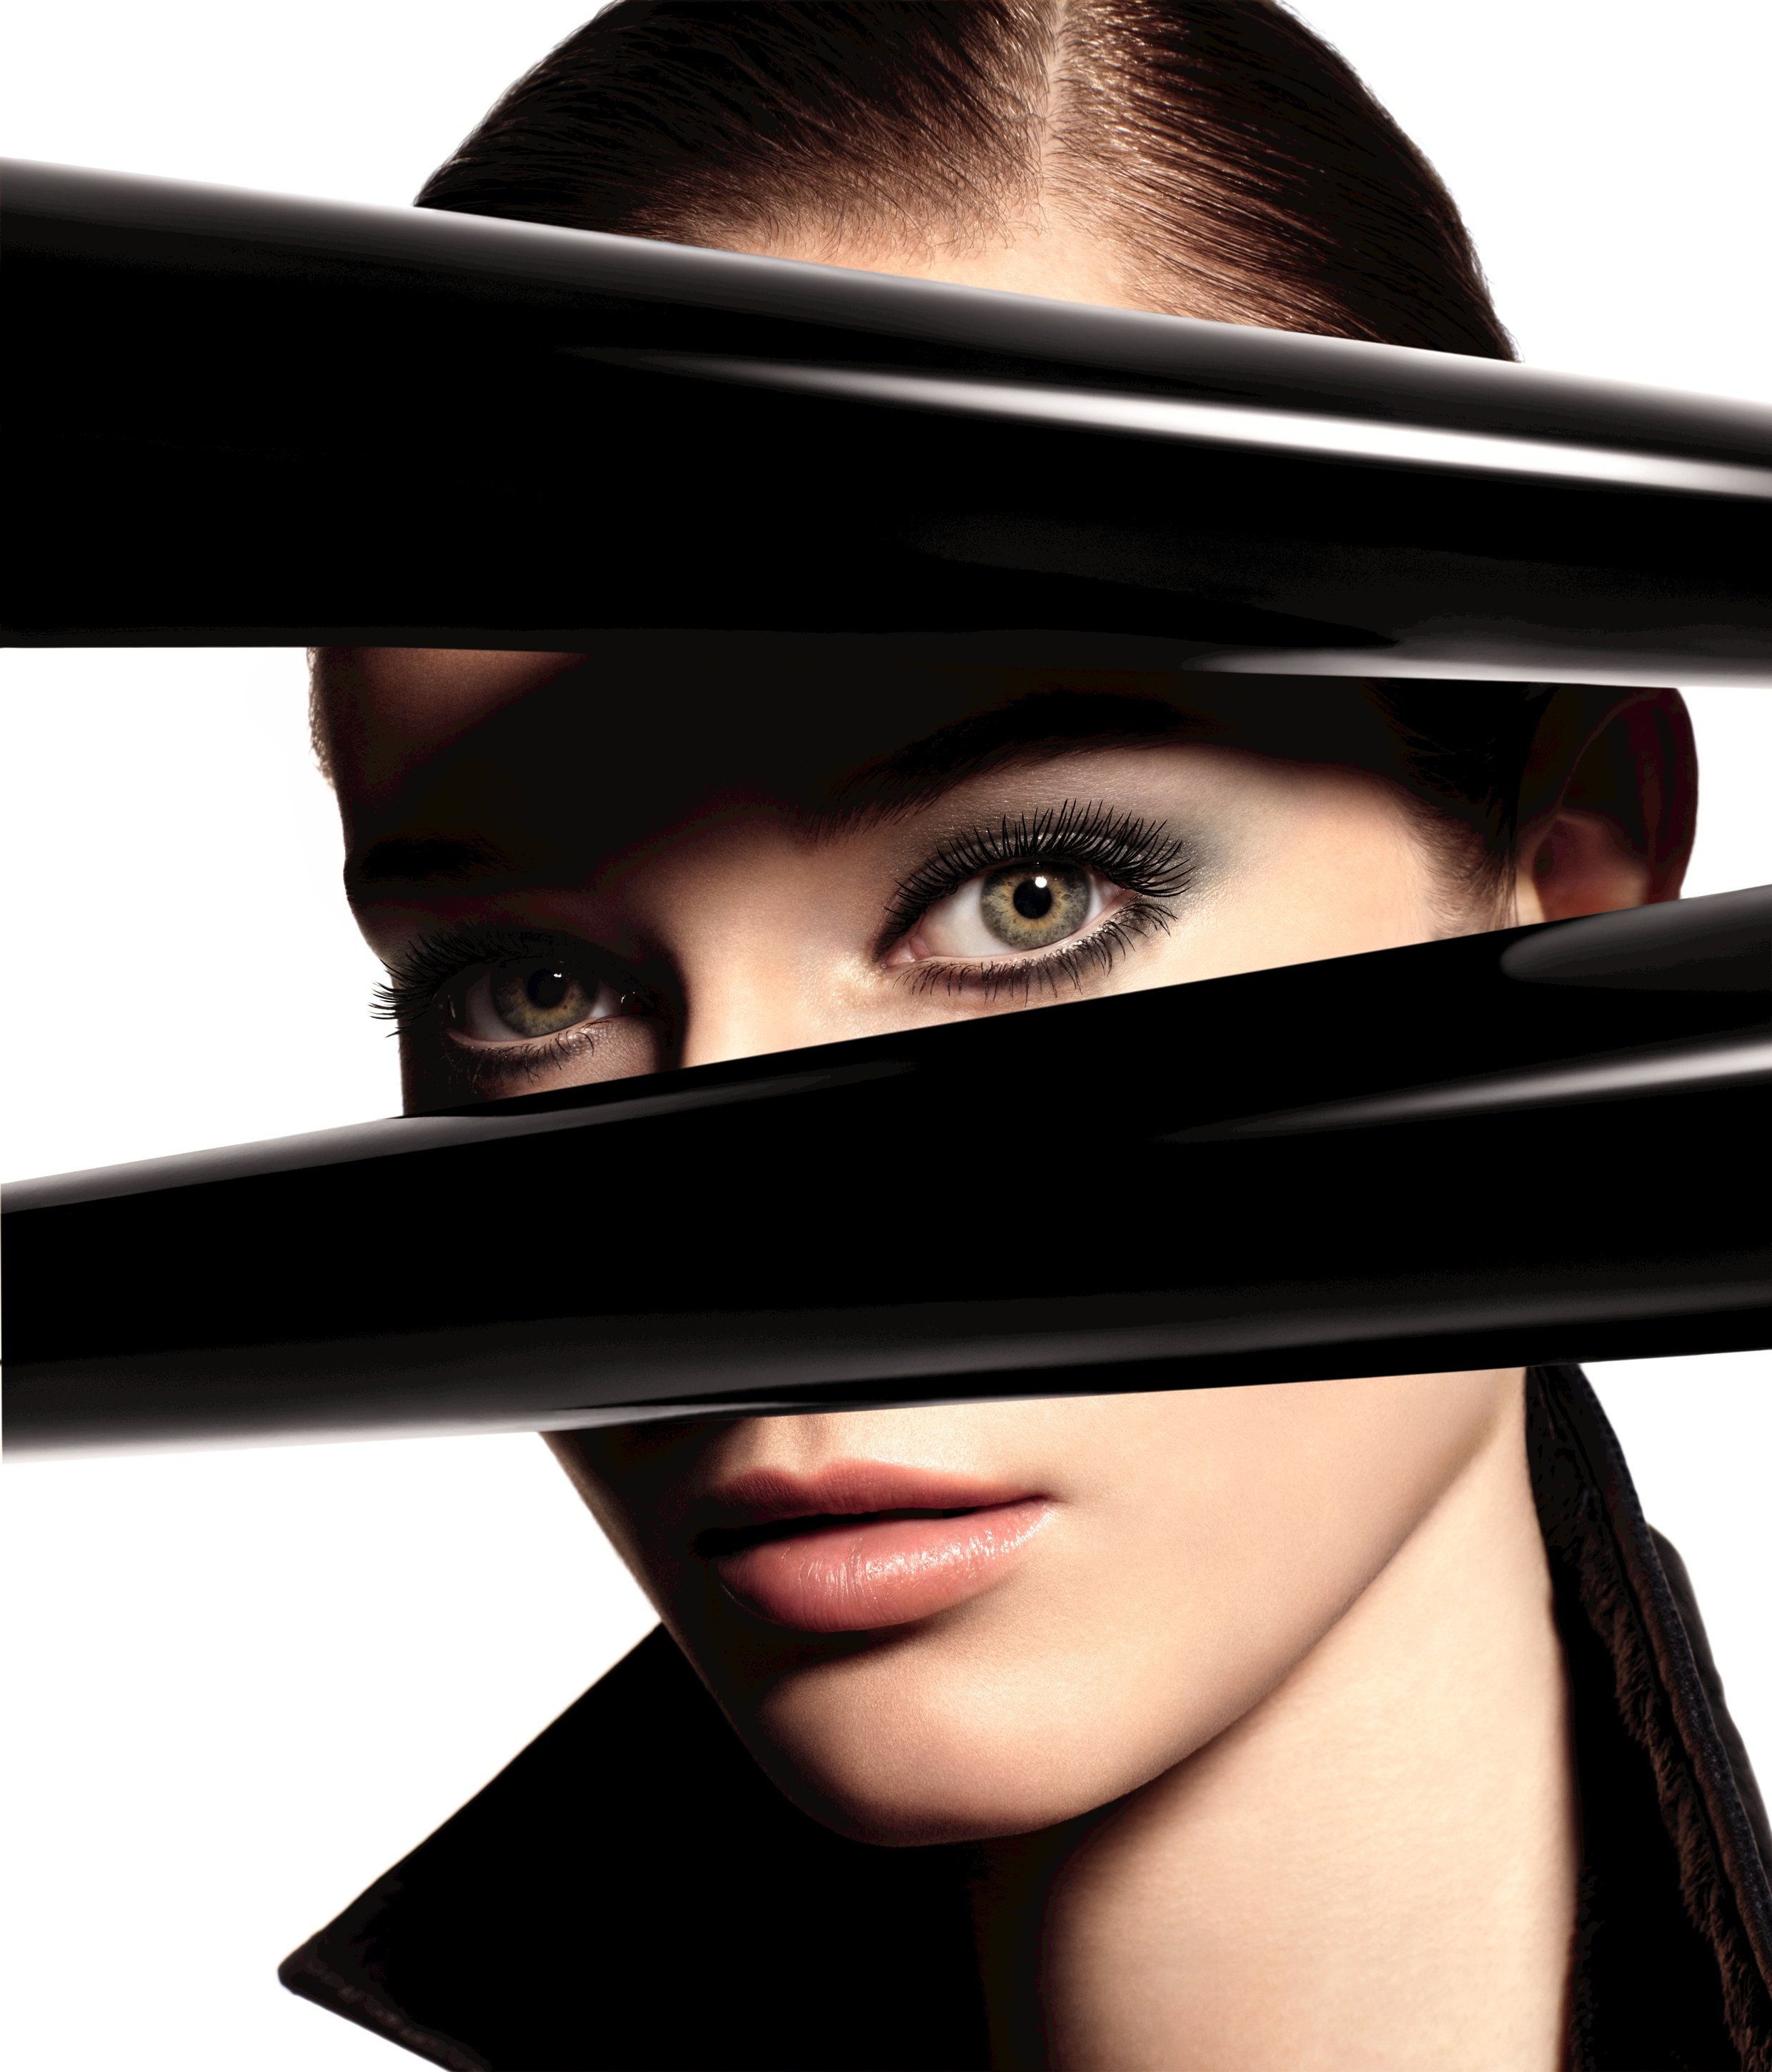 Vervullen minstens elke keer Nieuwe eyecandy van Chanel: Jeux de Regards | Independent Fashion Daily